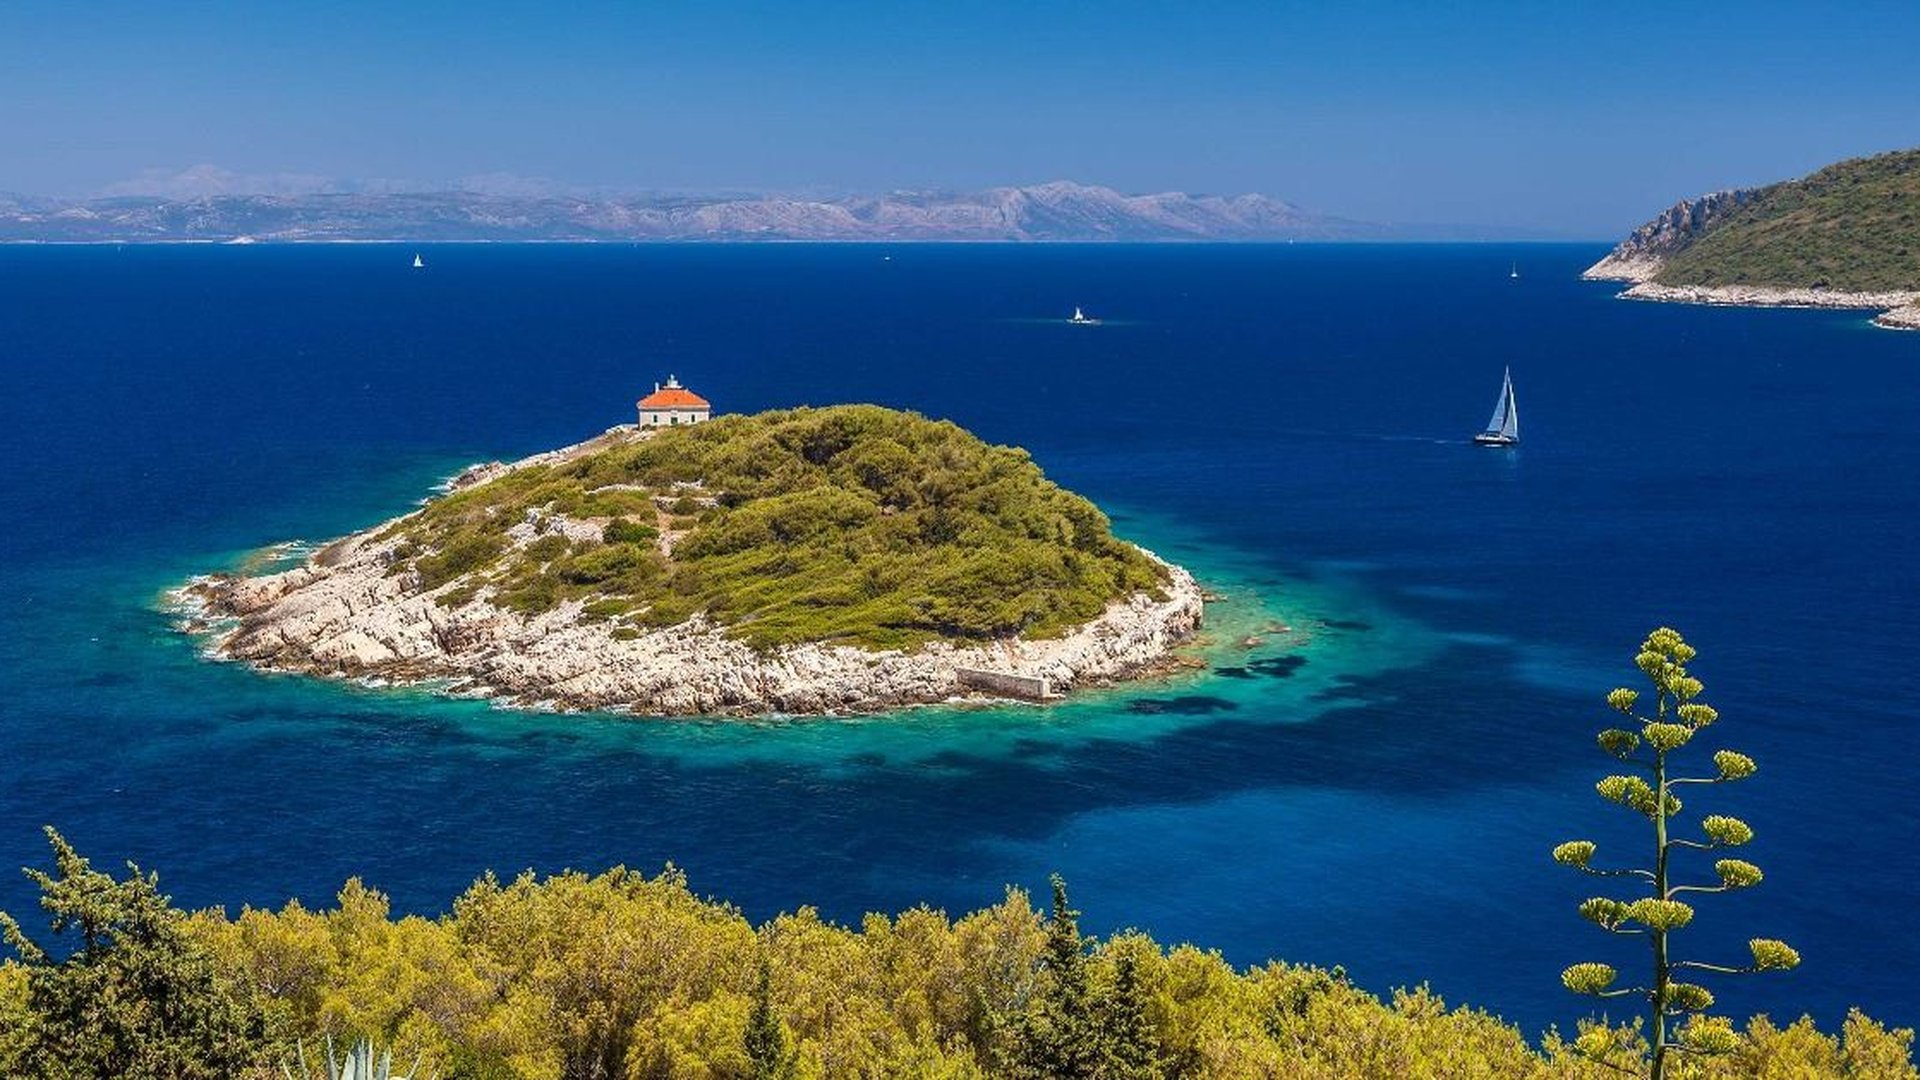 Kaufverfahren für Immobilien in Kroatien durch EU-Bürger